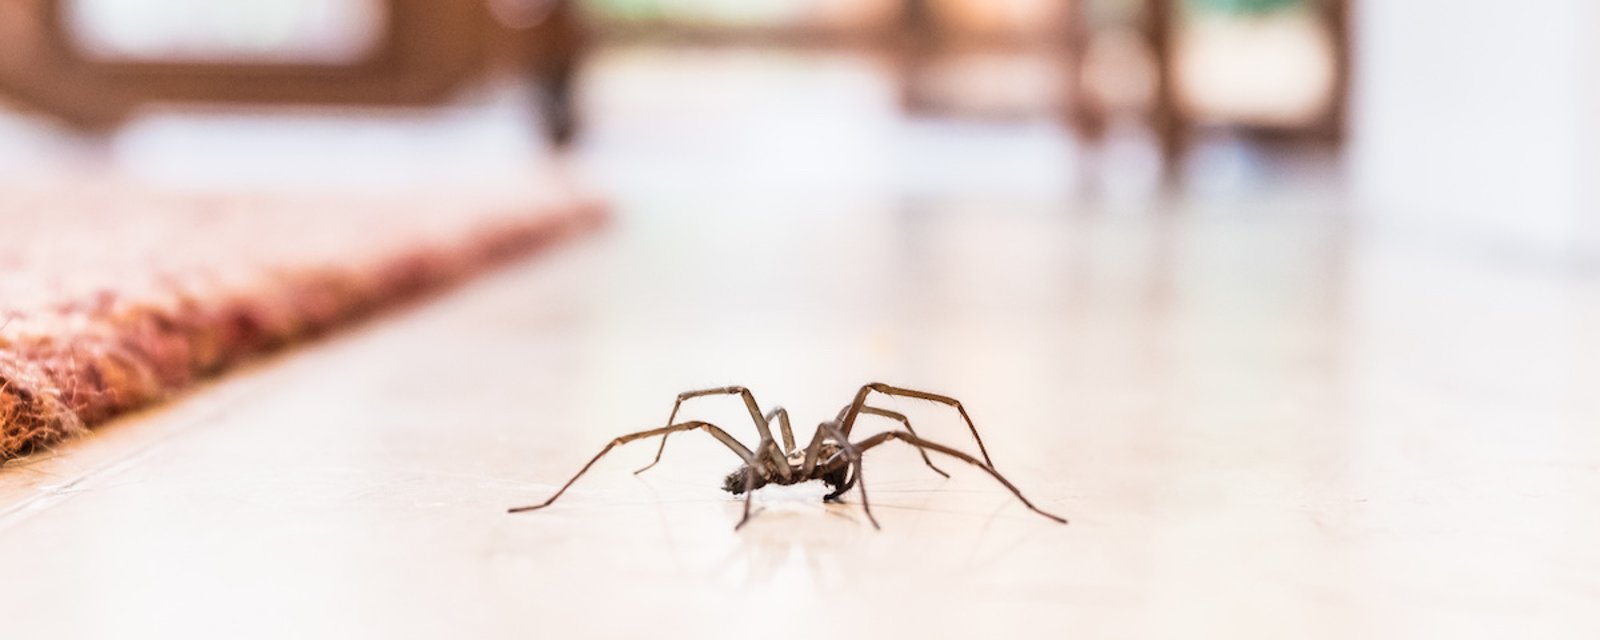 Un expert explique pourquoi nous ne devrions jamais tuer les araignées dans nos maisons